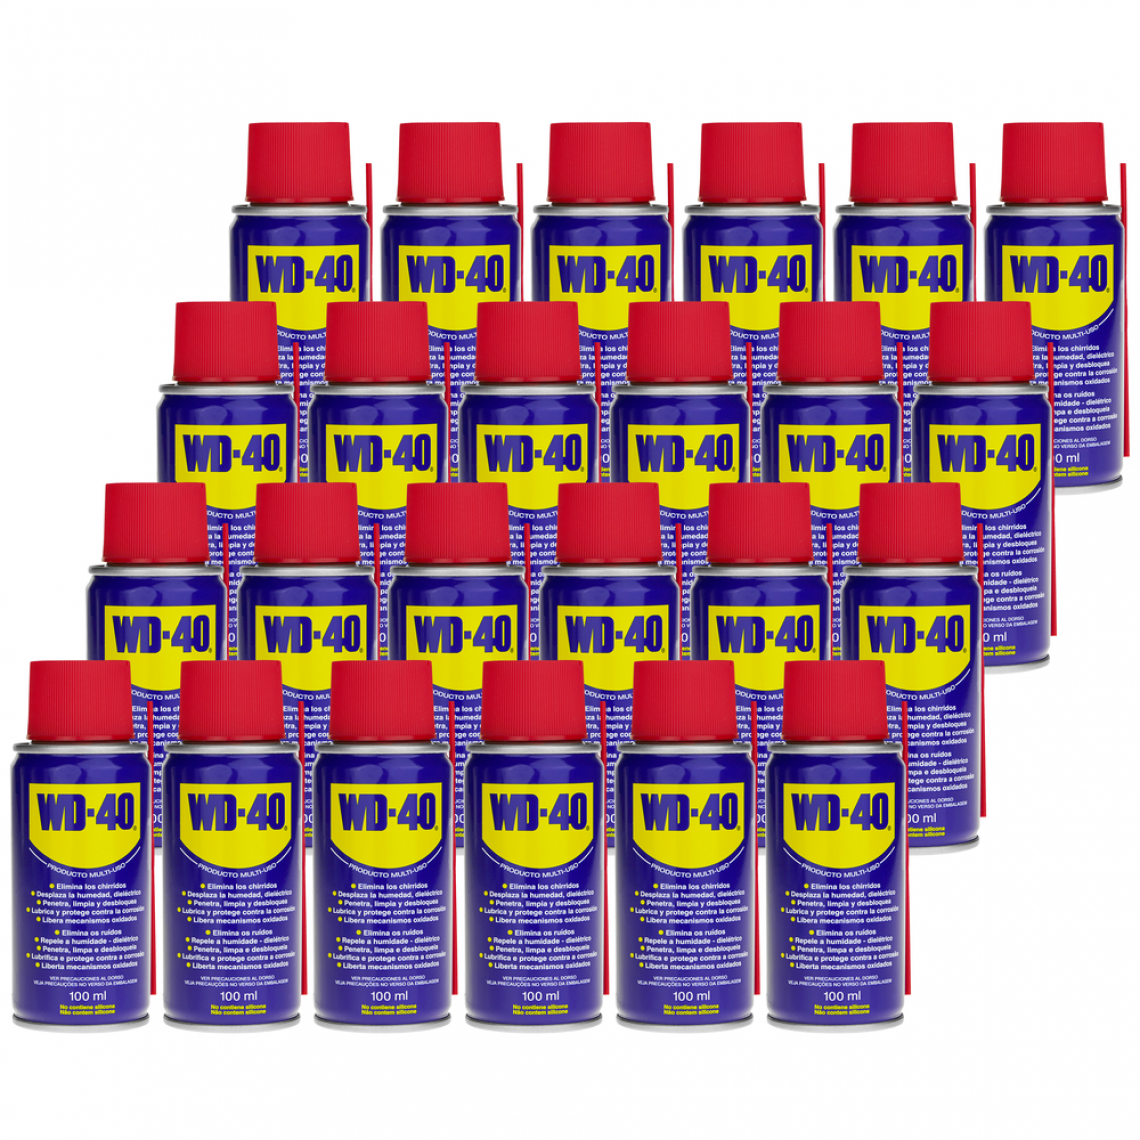 Wd-40 - Spray lubrifiant polyvalent 100 ml (boîte de 24 unités) - Mastic, silicone, joint